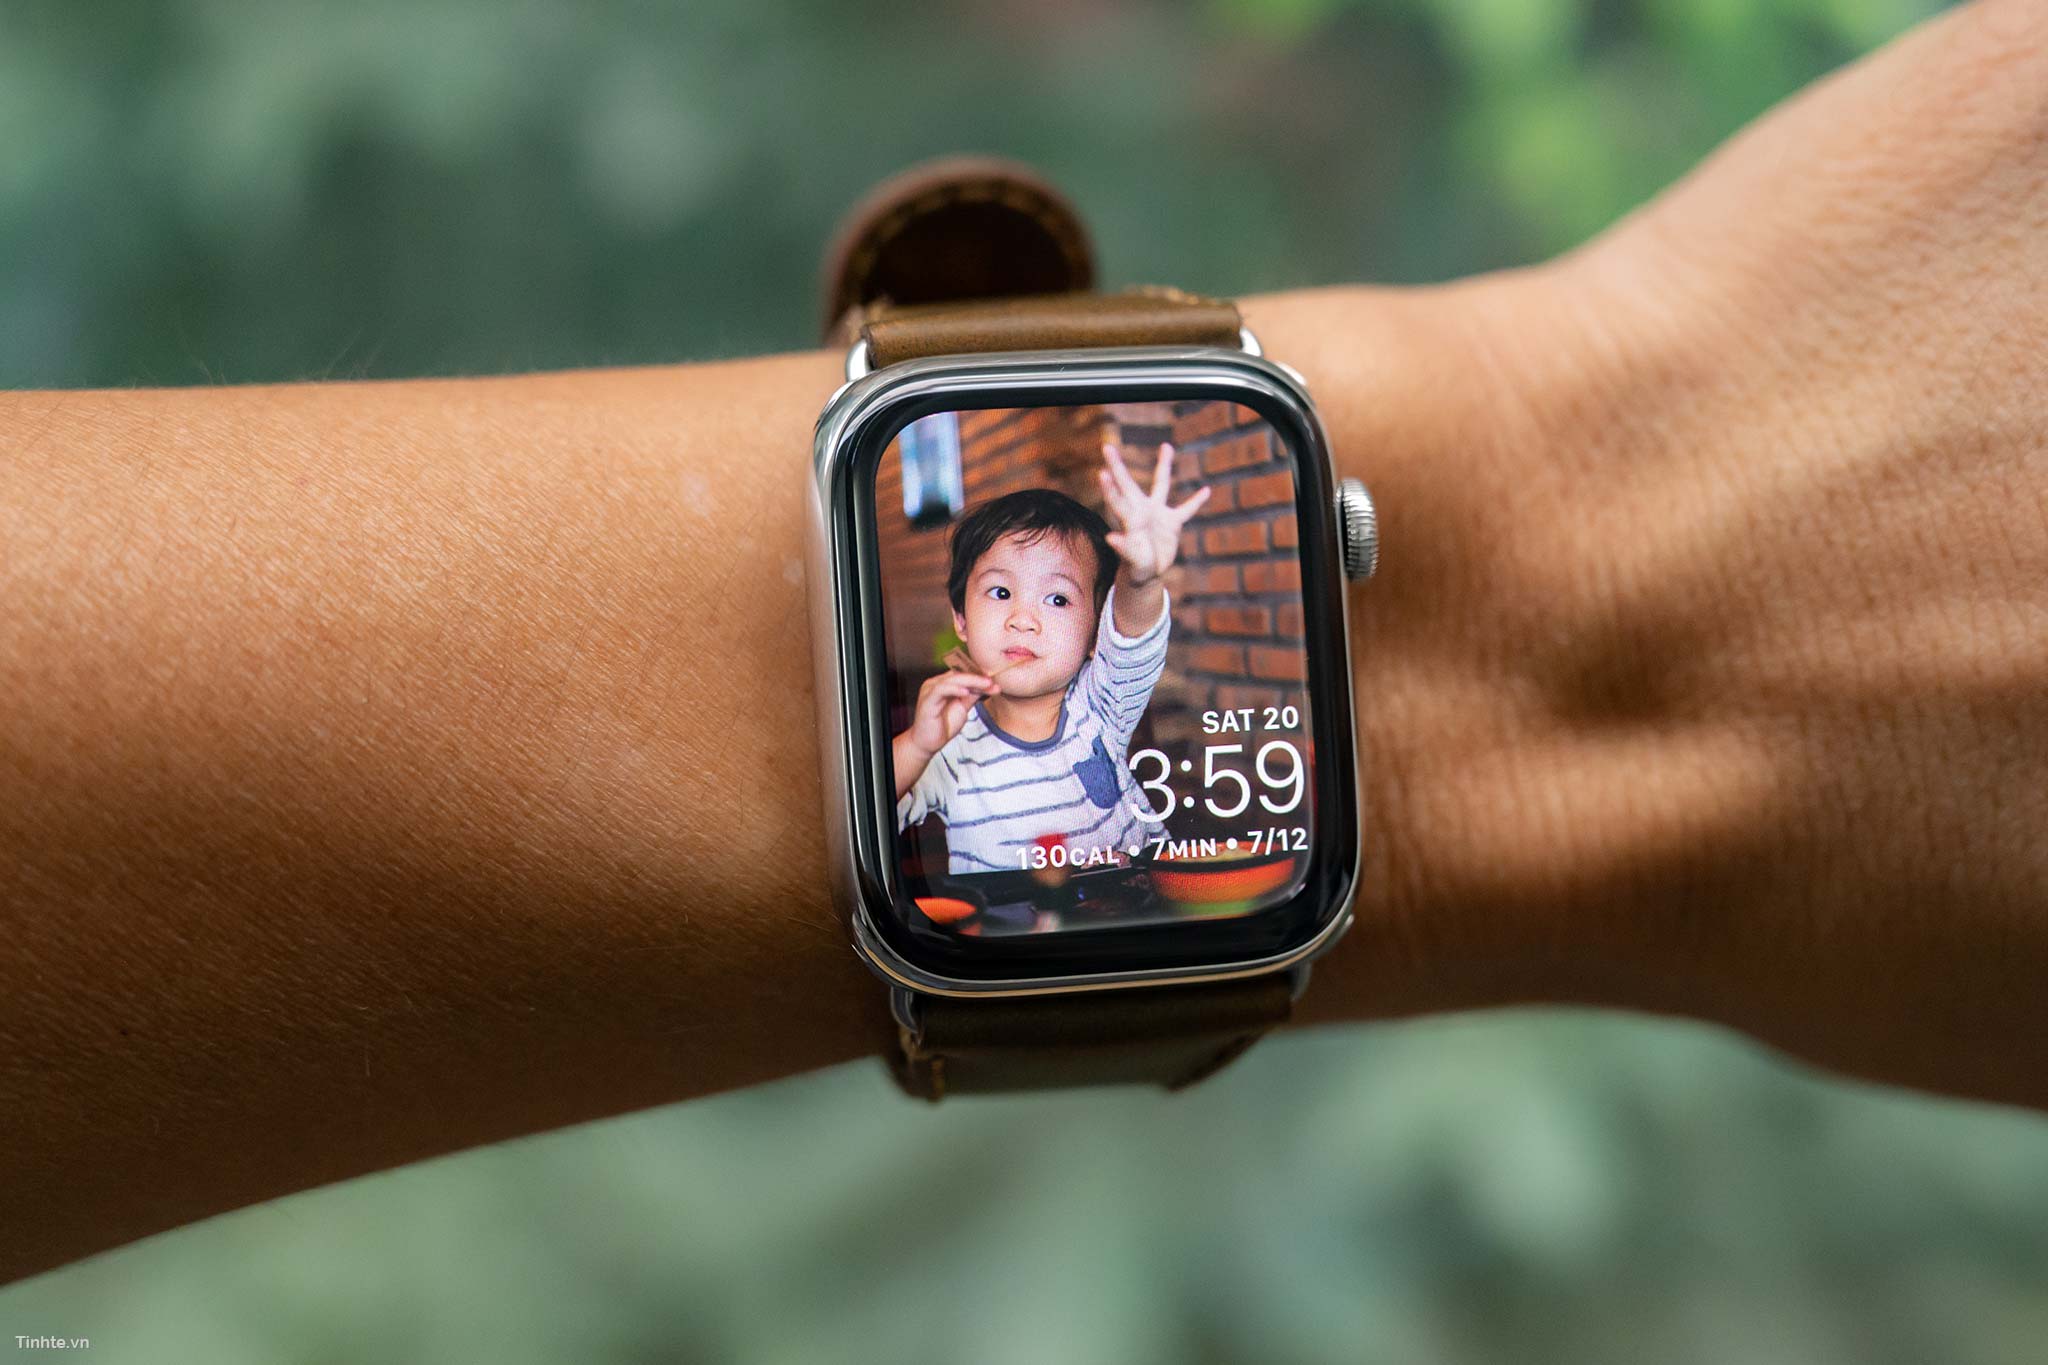 Đồng hồ thông minh Seri 5 từ Apple Watch là sự lựa chọn hoàn hảo cho những ai muốn kết nối nhanh chóng và tiện lợi với các thiết bị di động khác. Với màn hình rộng và độ phân giải cao, tính năng đo nhịp tim và chất lượng âm thanh tốt, bạn sẽ không thể rời mắt khỏi sản phẩm này!